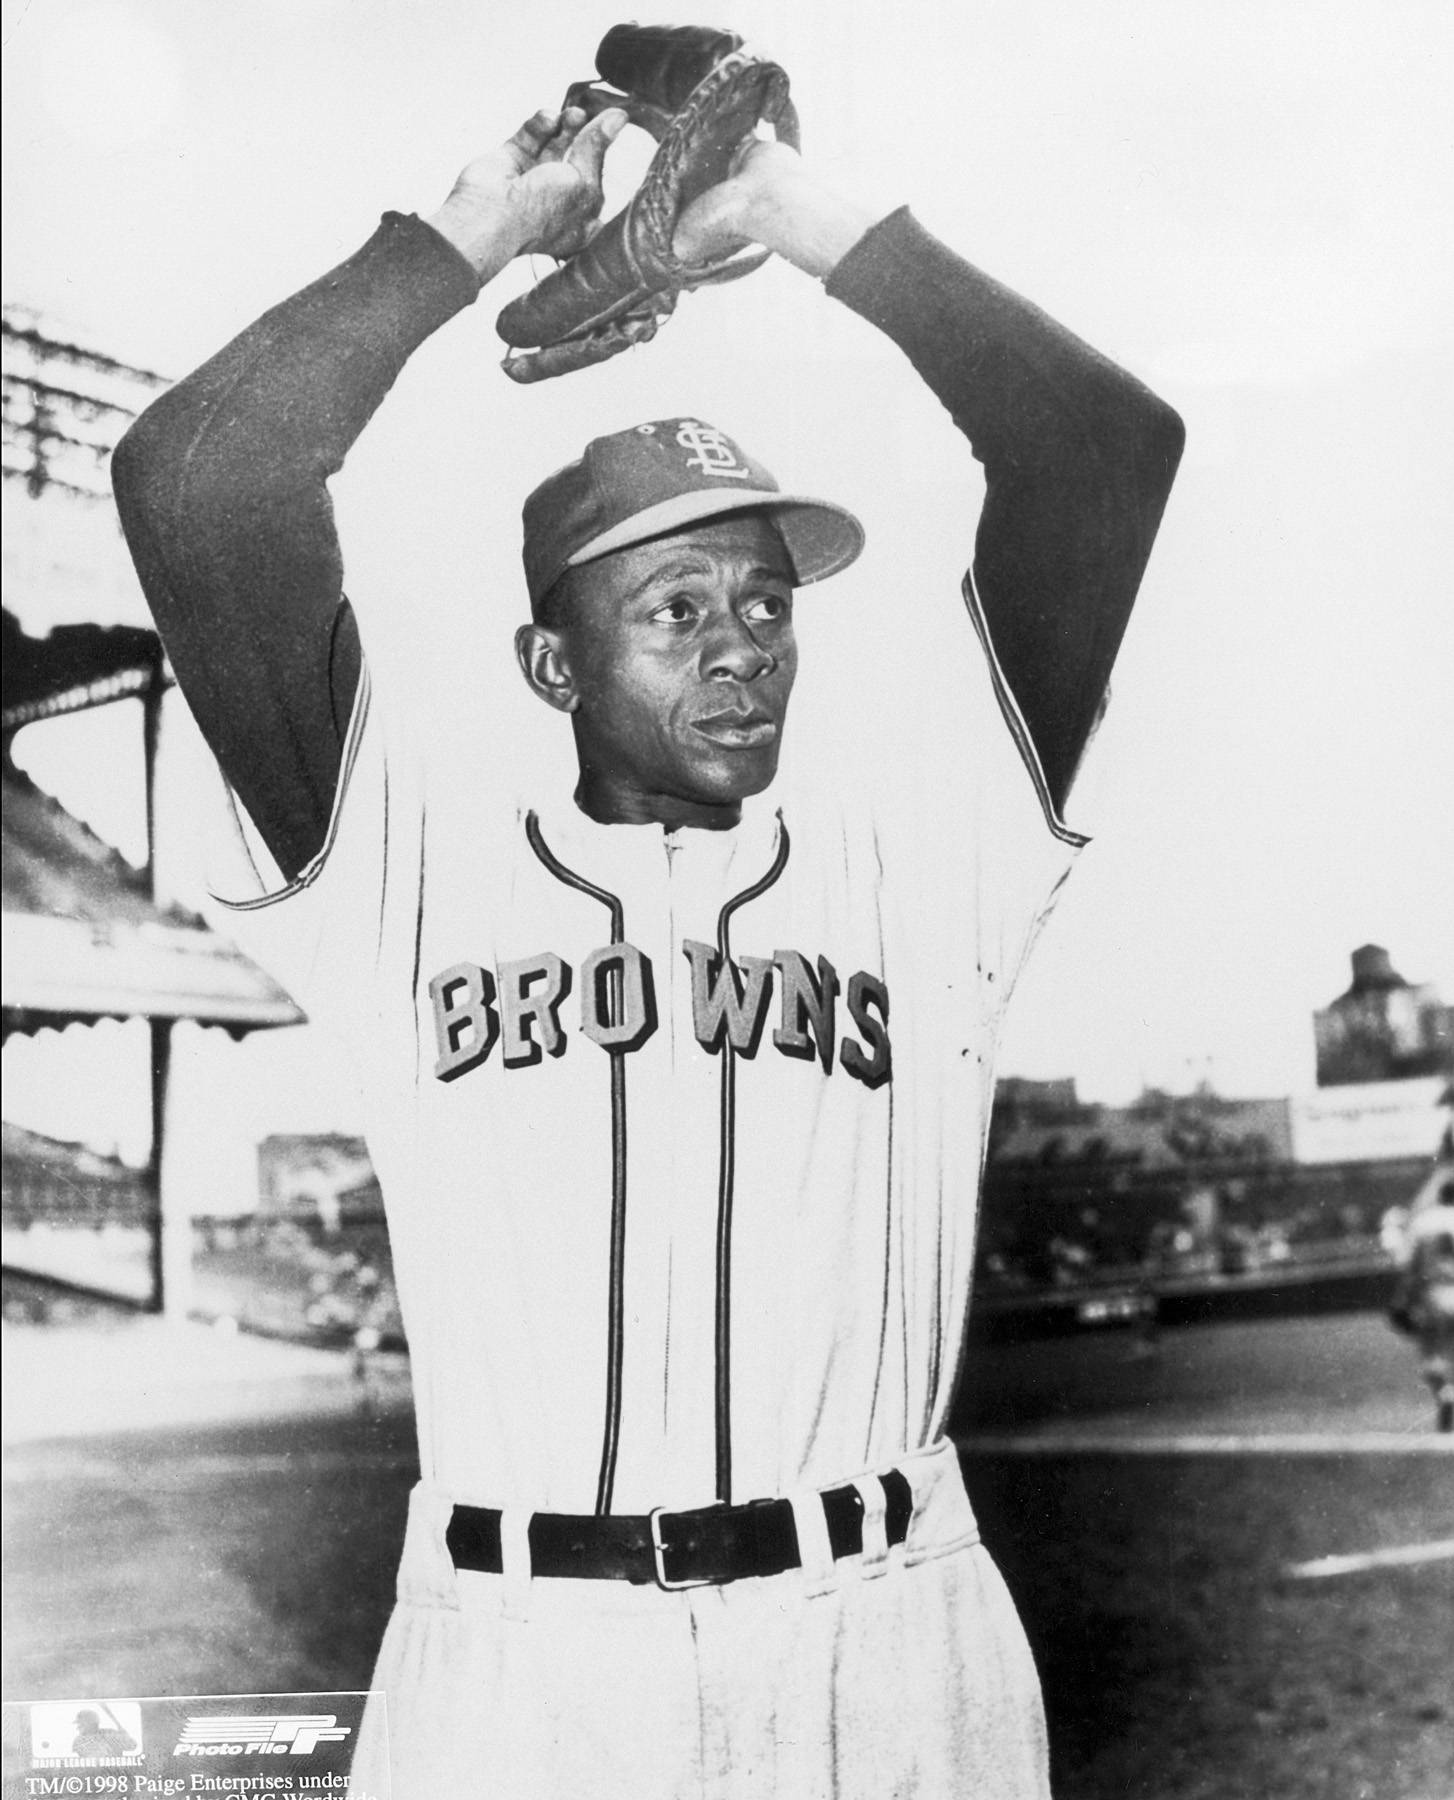 Leroy R. Paige, Baseball Hall of Fame